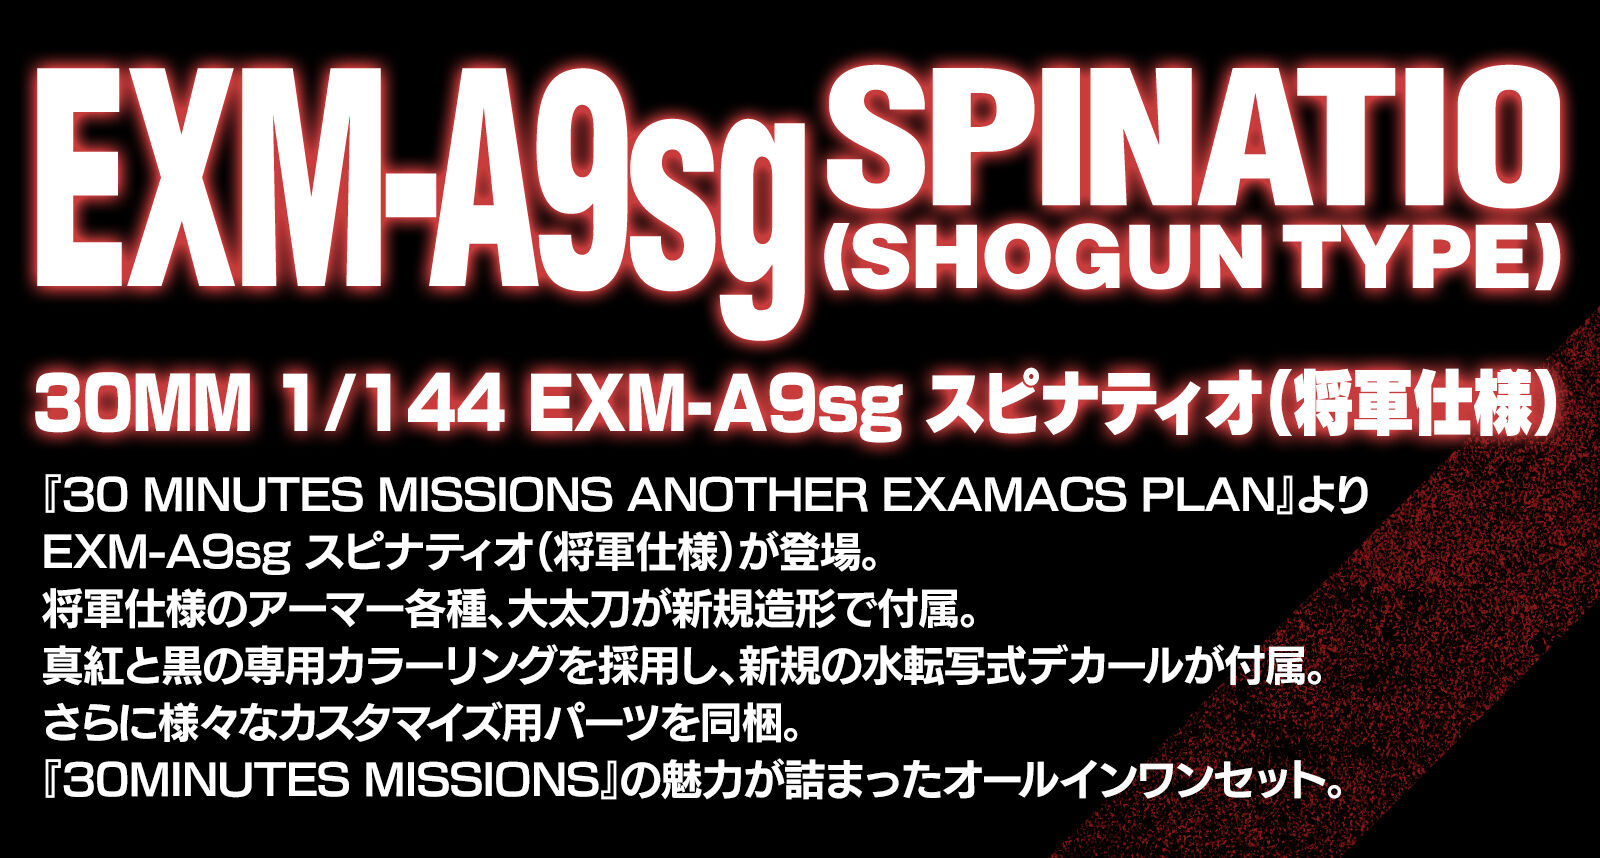 EXM-A9sg SPINATIO(SHOGUN TYPE)